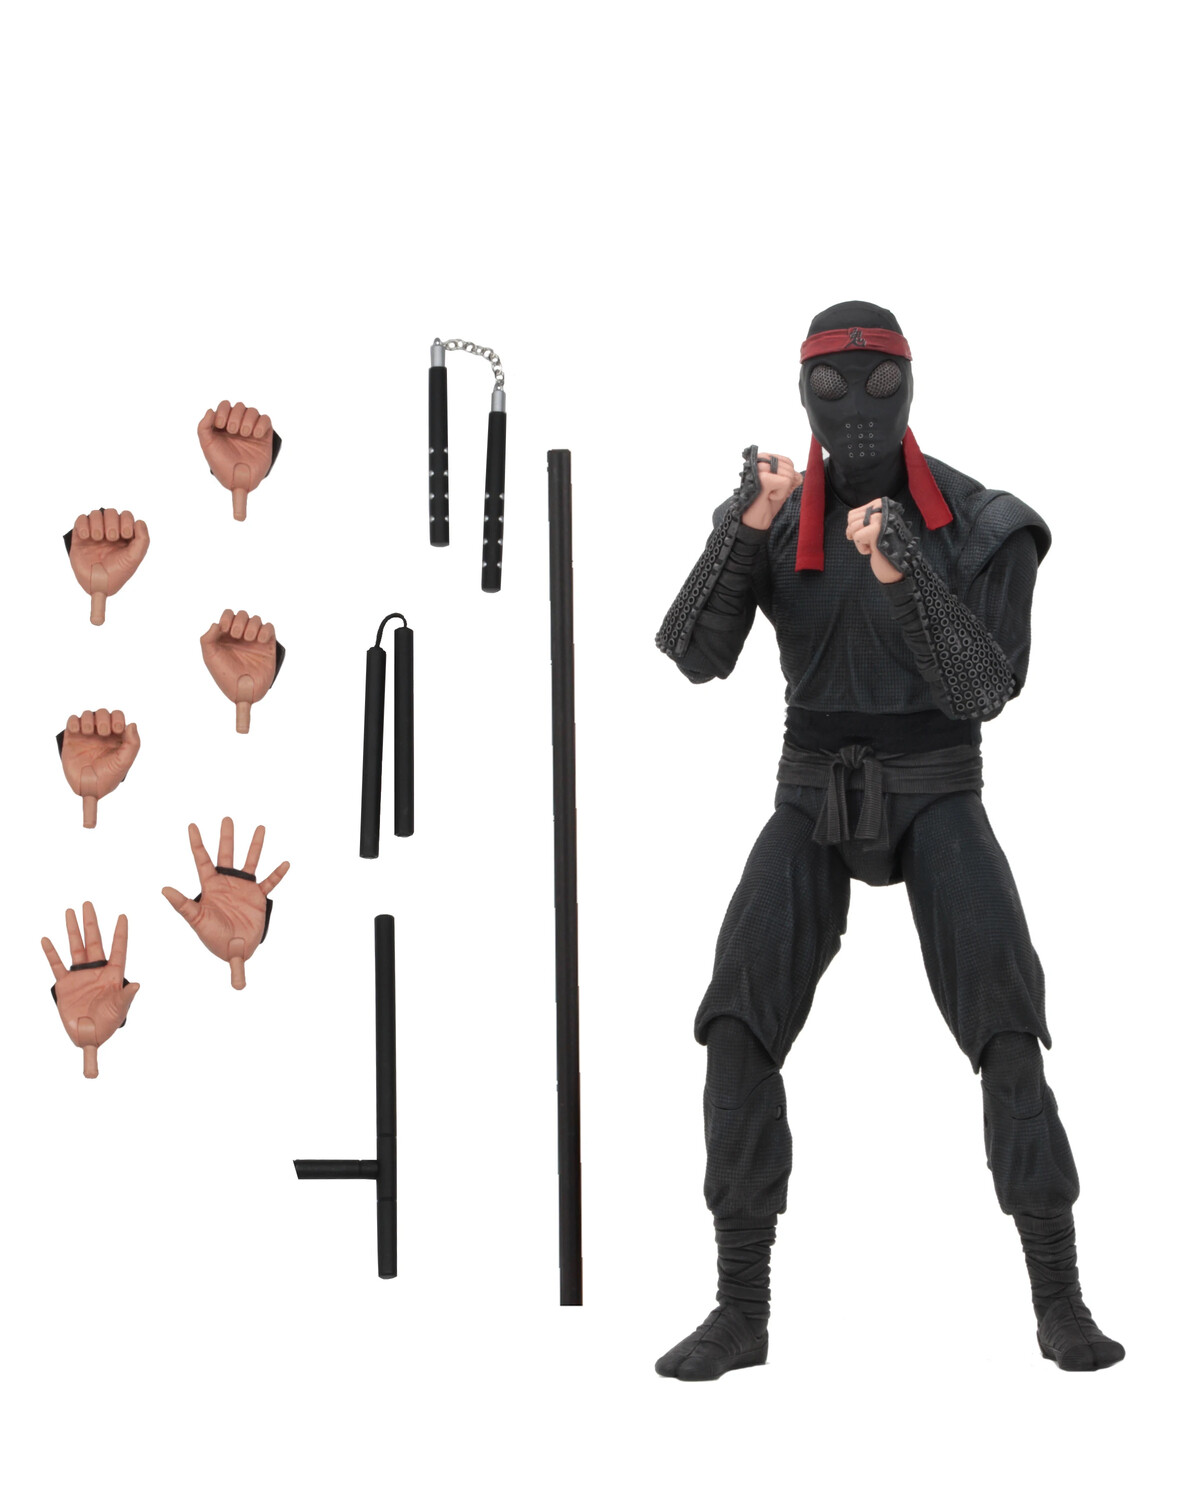 Neca Teenage Mutant Ninja Turtles - 7” Scale Action Figure - Foot Soldier (melee weaponry)